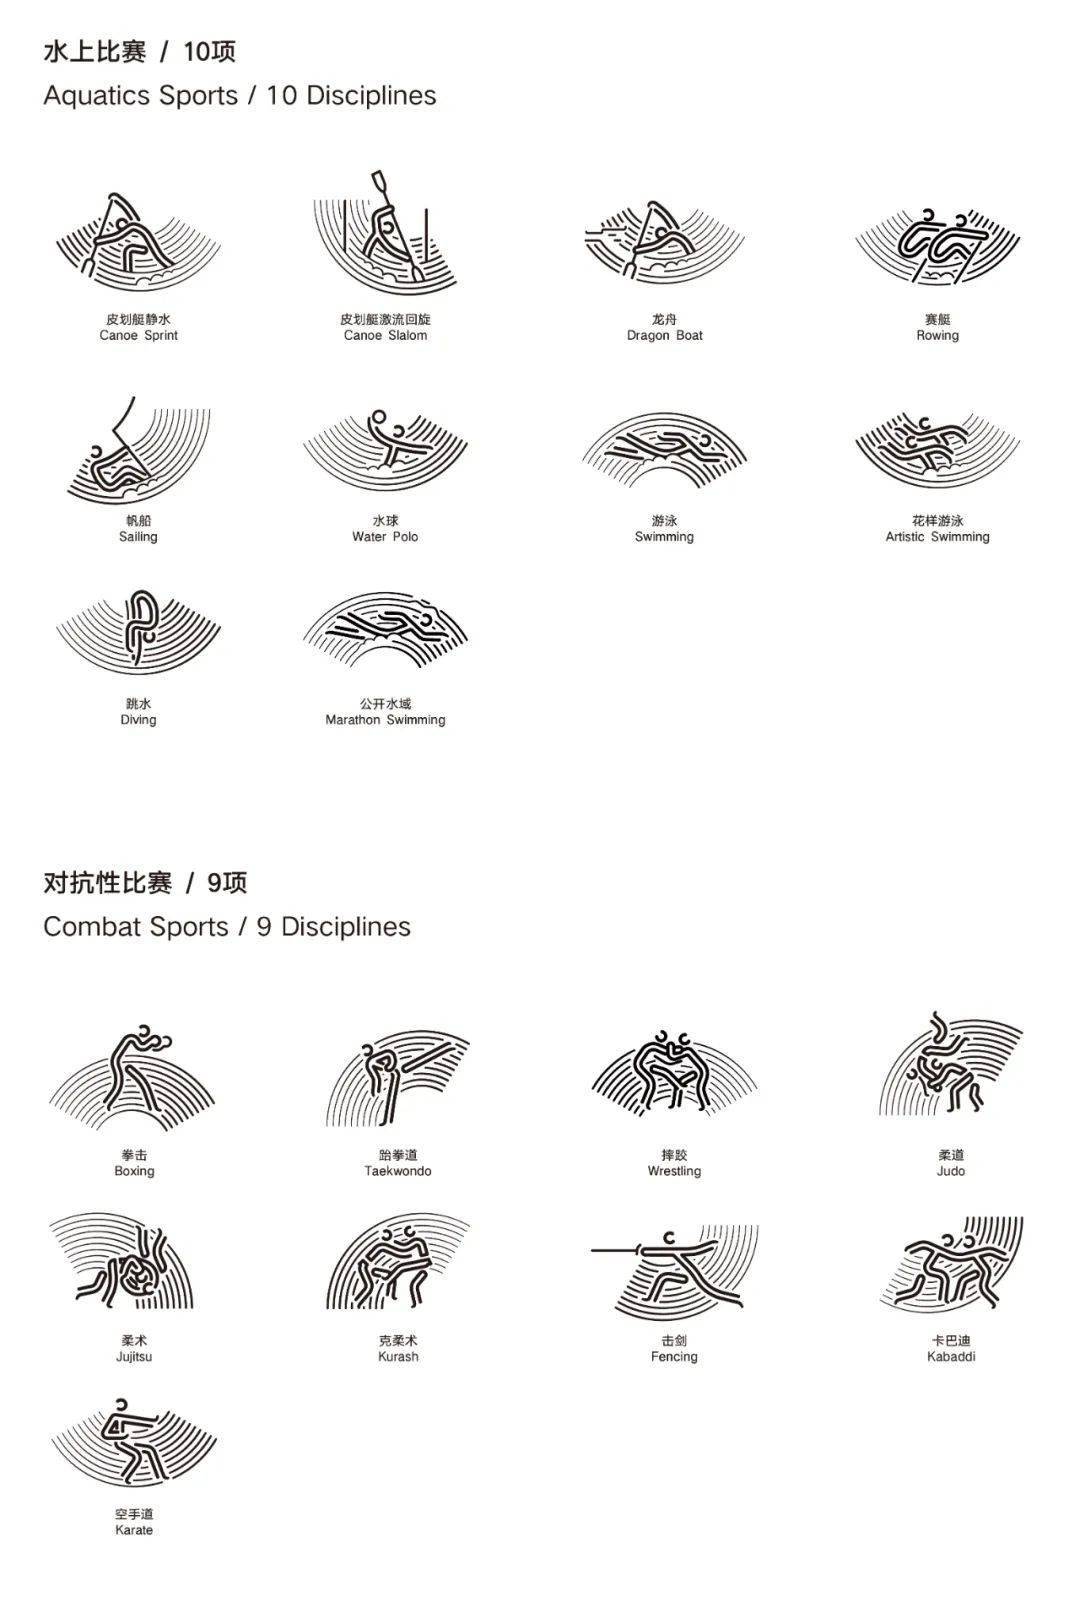 杭州亚运会体育图标发布!